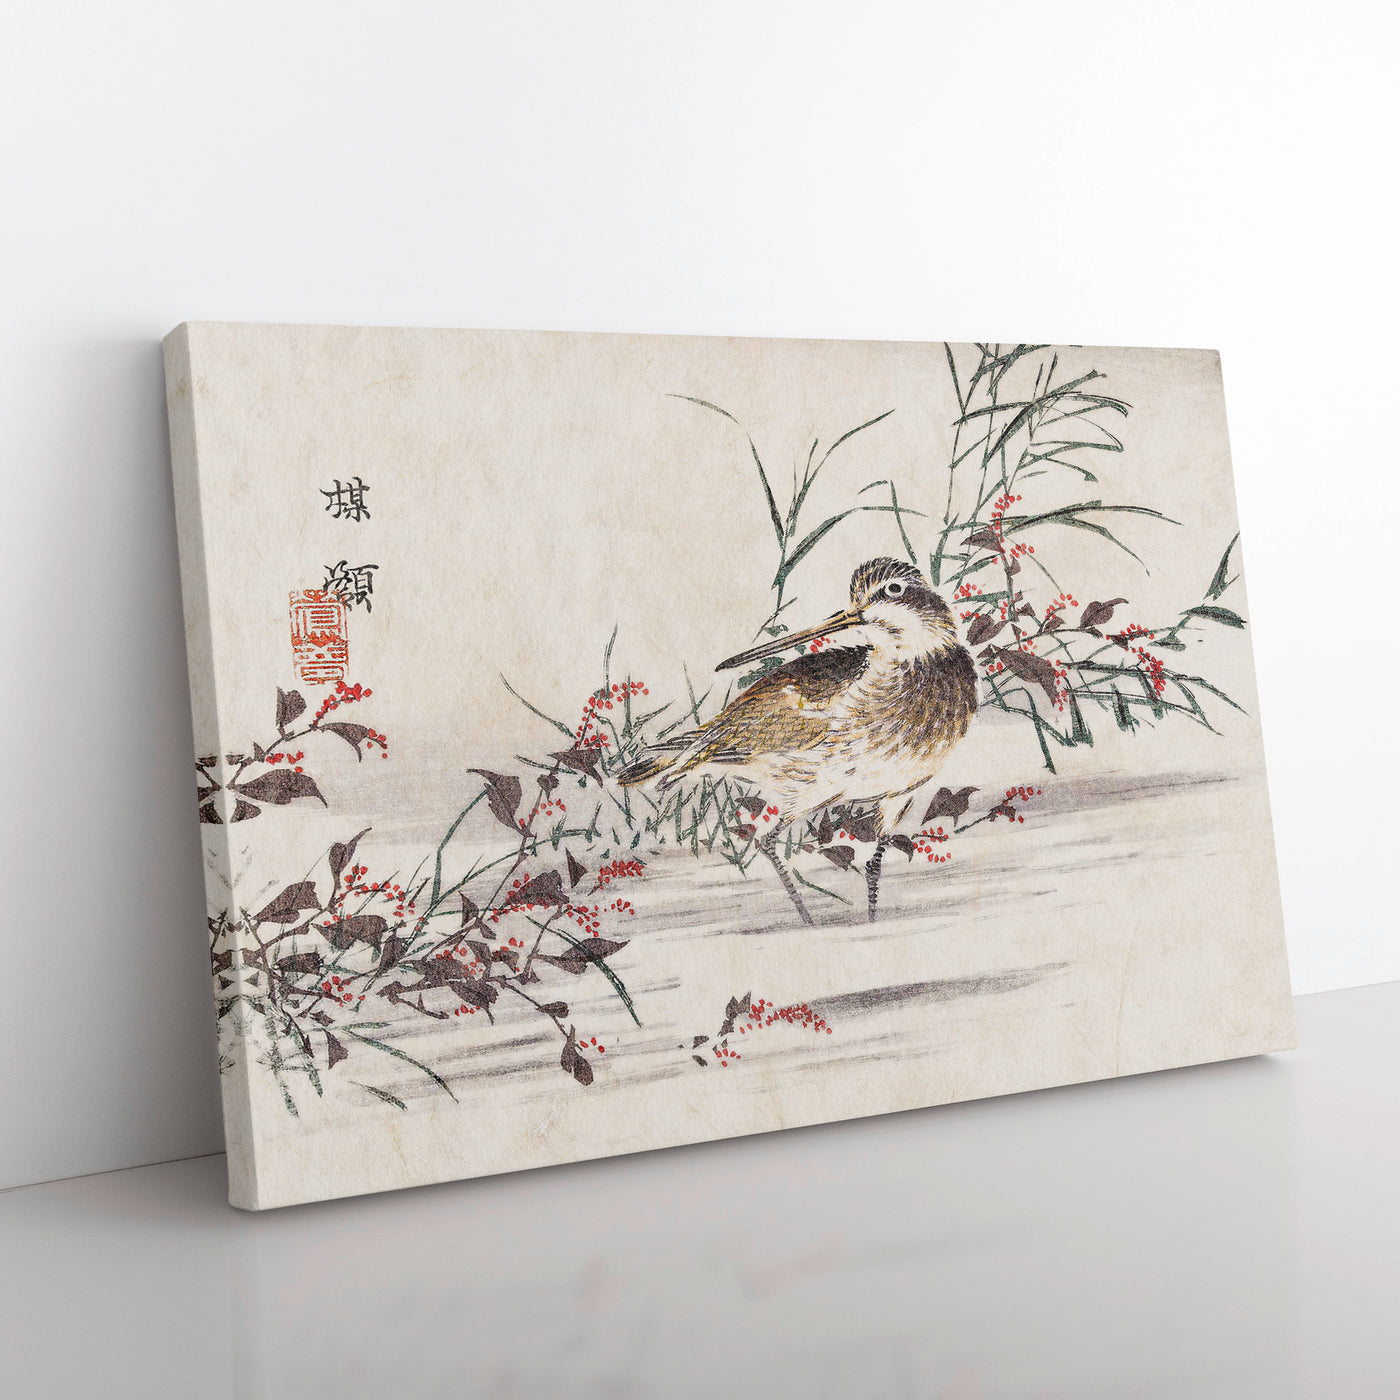 A Bird In The Water By Kono Bairei